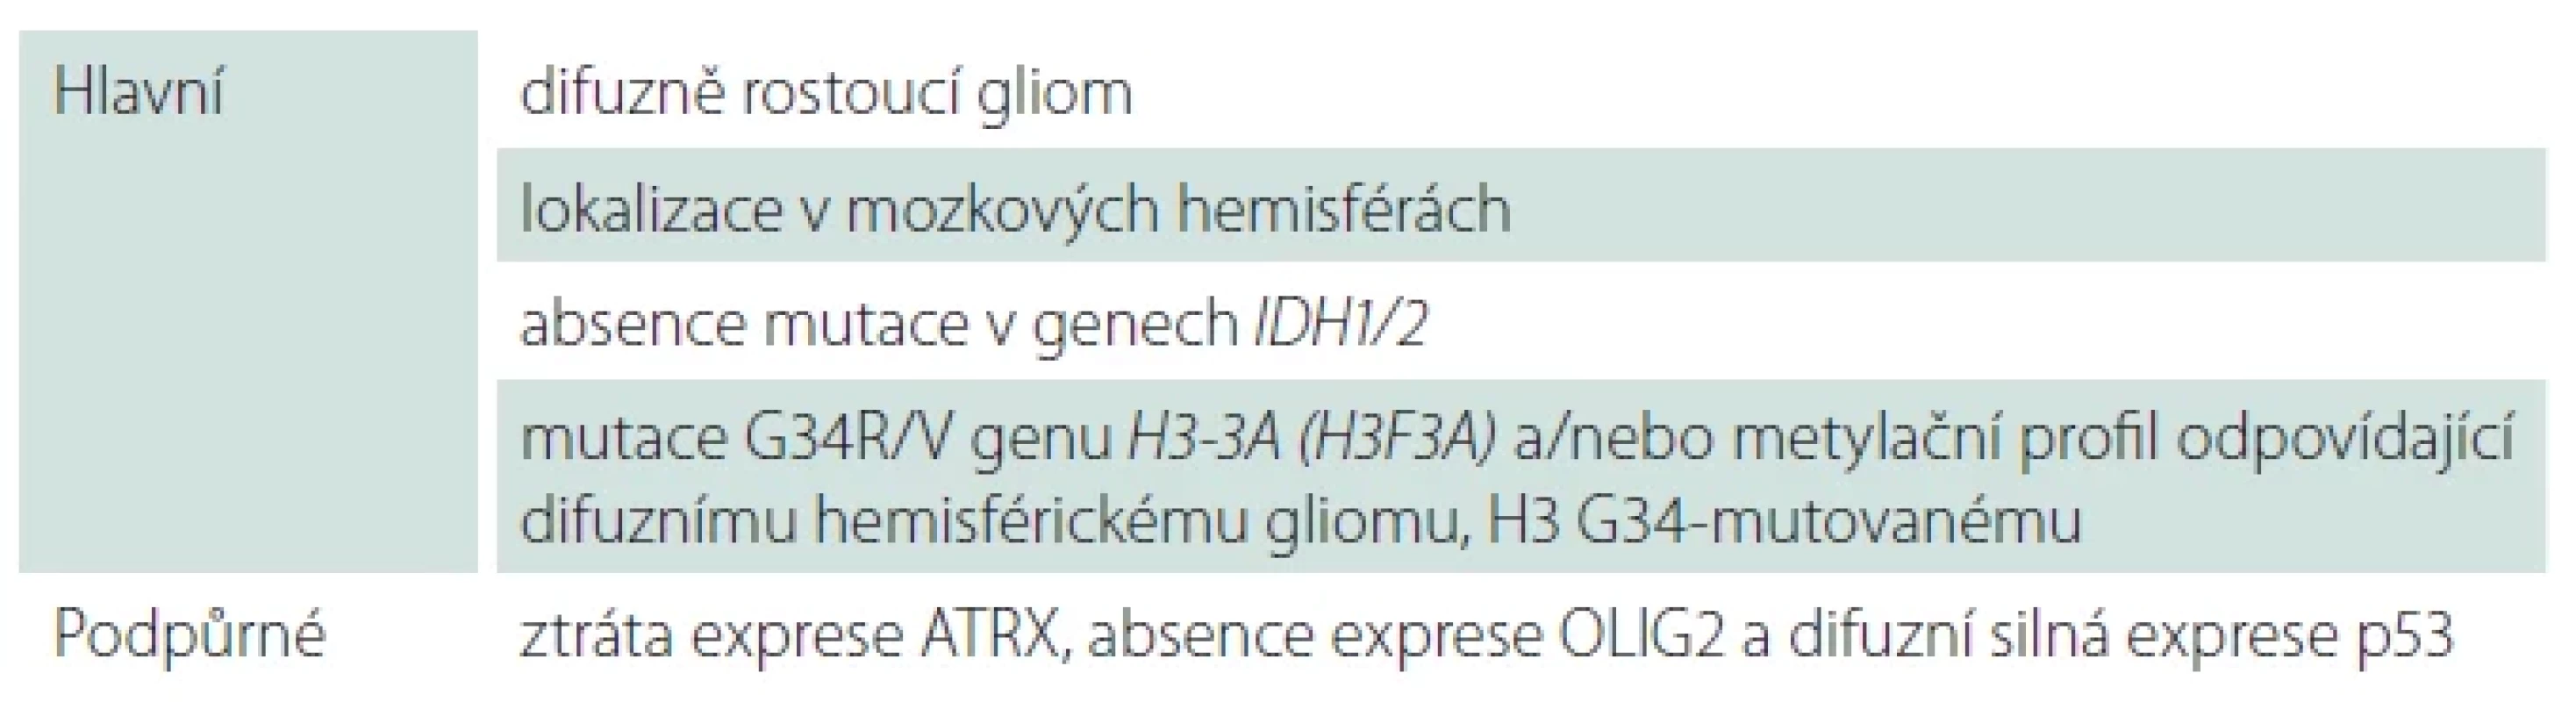 Diagnostická kritéria pro difuzní hemisférický gliom, H3 G34-mutovaný dle WHO 2021.